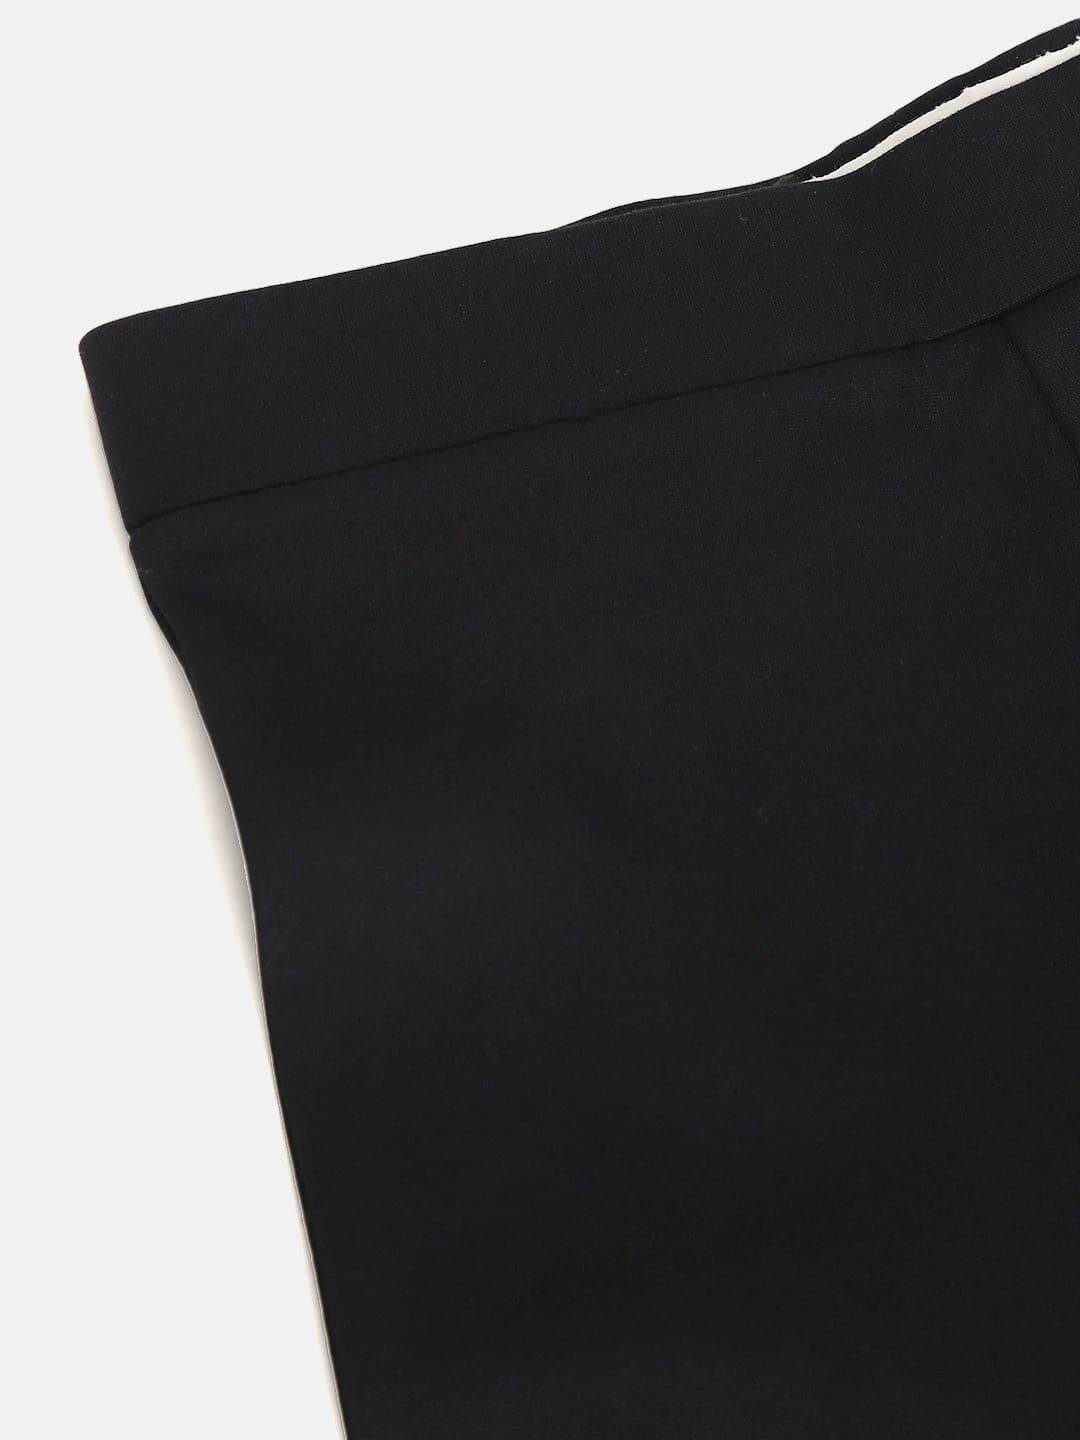 Buy Lyush Black Bell Bottom Pants For Girls Online at Best Price